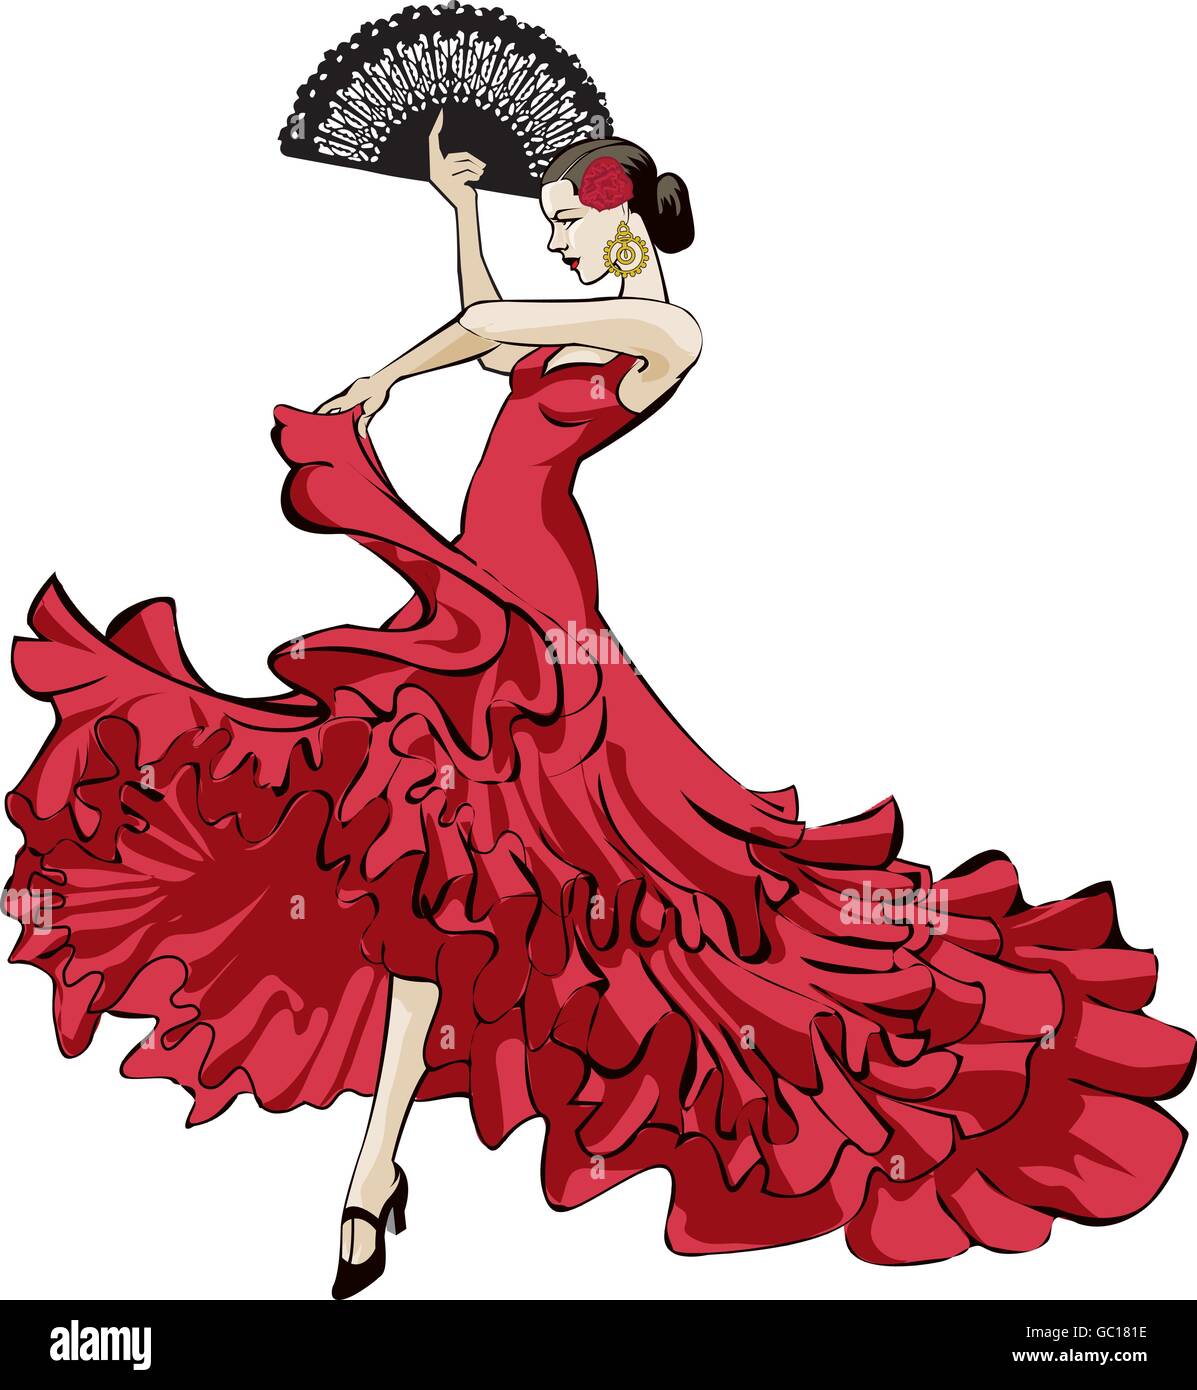 Flamenco illustration immagini e fotografie stock ad alta risoluzione -  Alamy